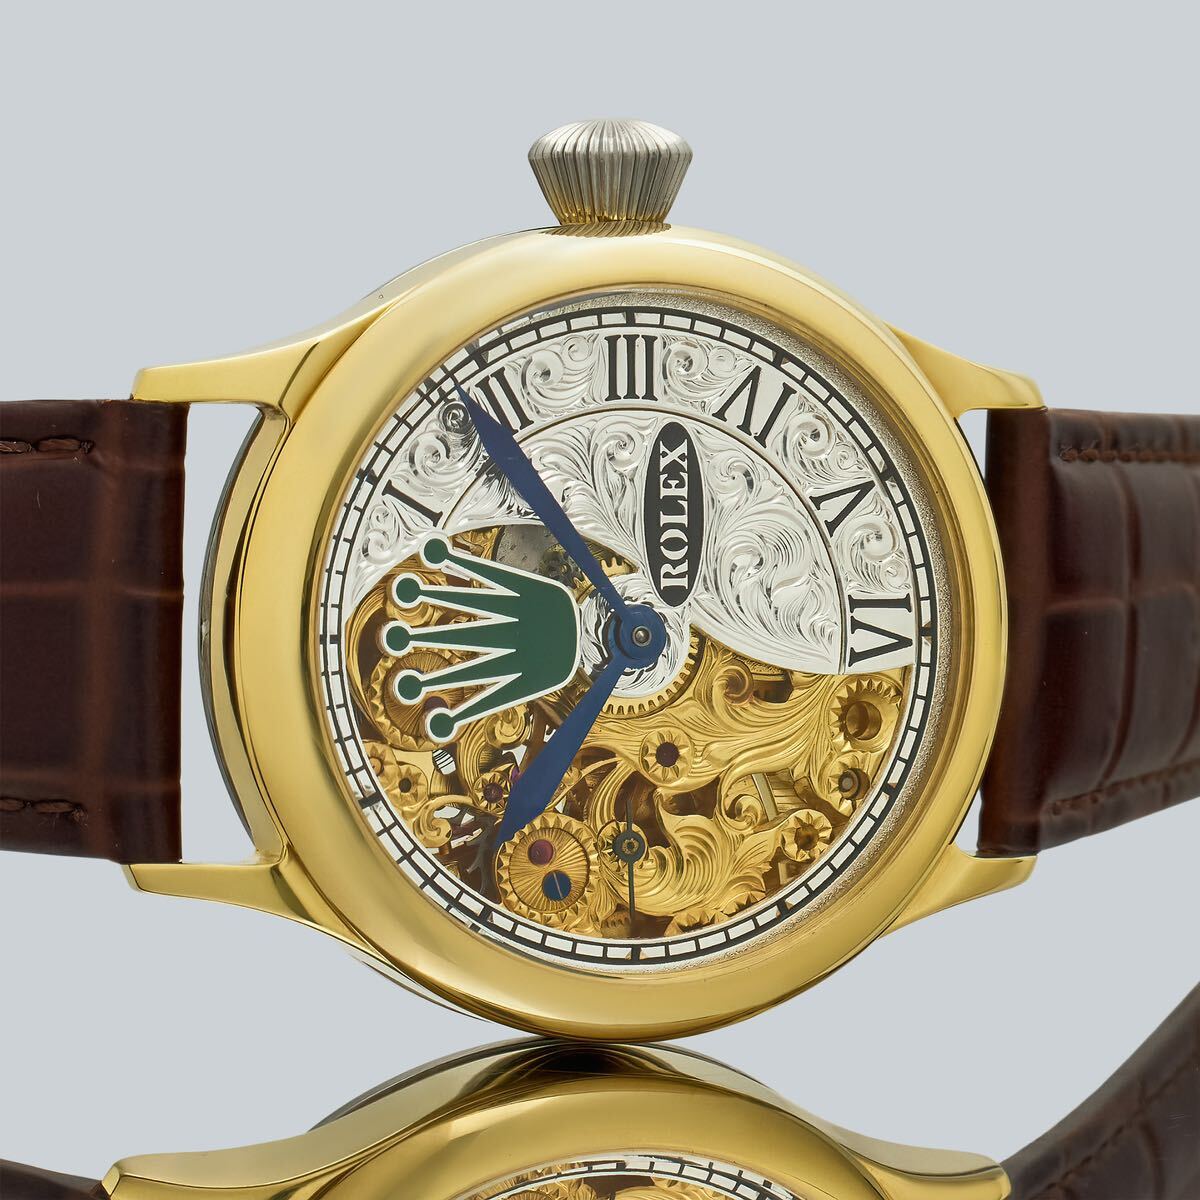 Marriage Watch Rolex 40mm Men's Wristwatch Arranged As A Pocket Watch, Manual Winding Skeleton